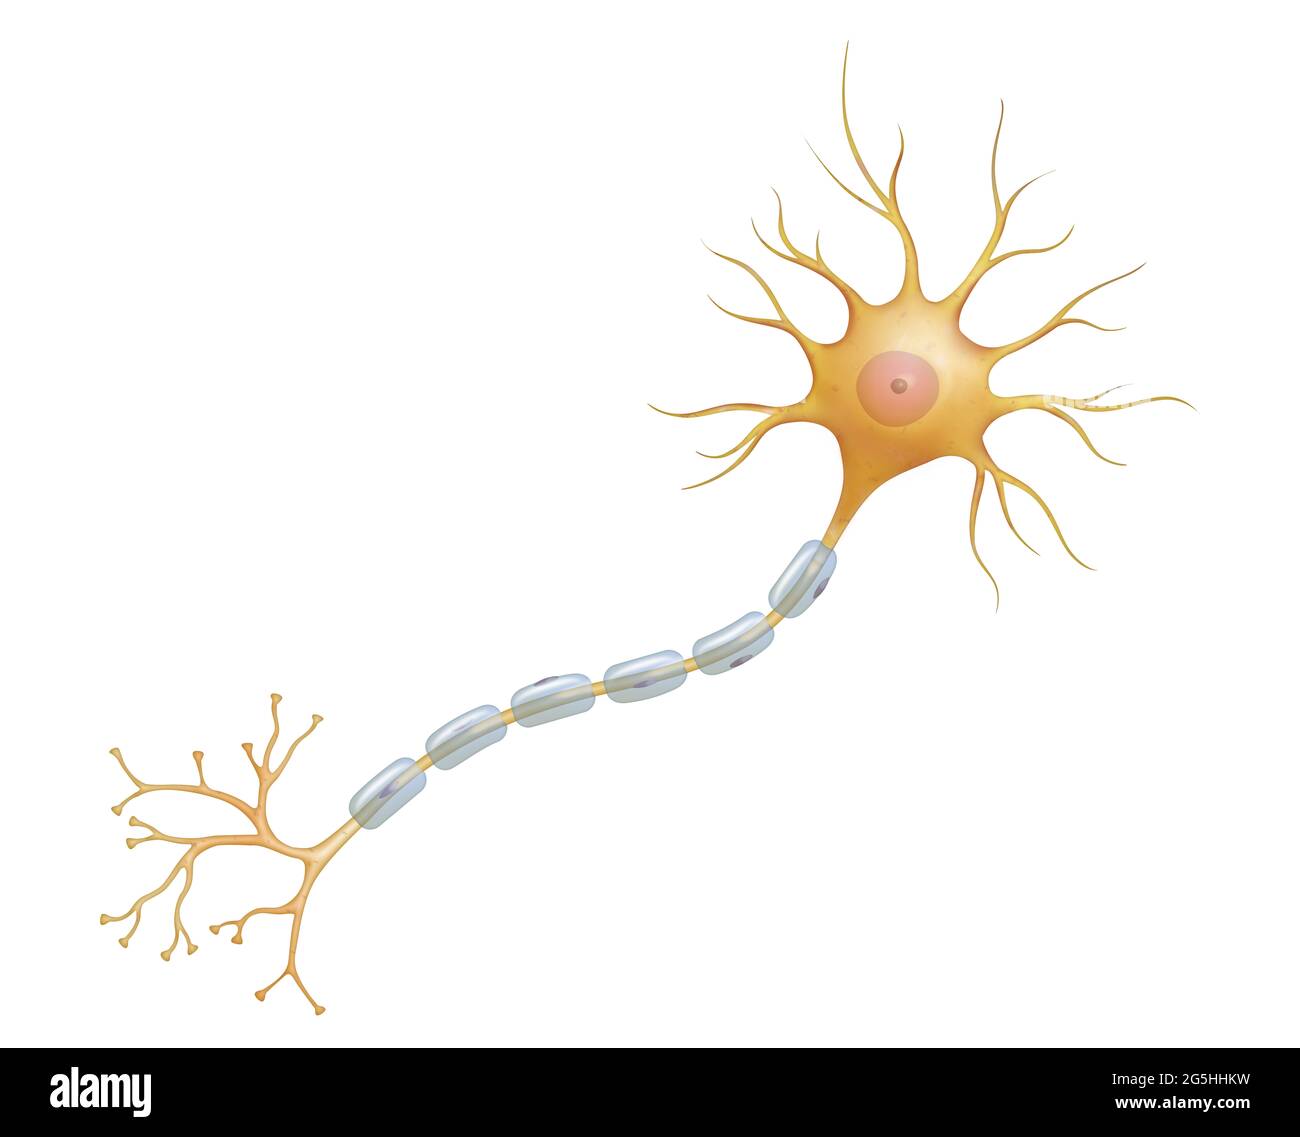 Neuron oder Nervenzelle ist der Hauptbestandteil des Nervengewebes Stockfoto